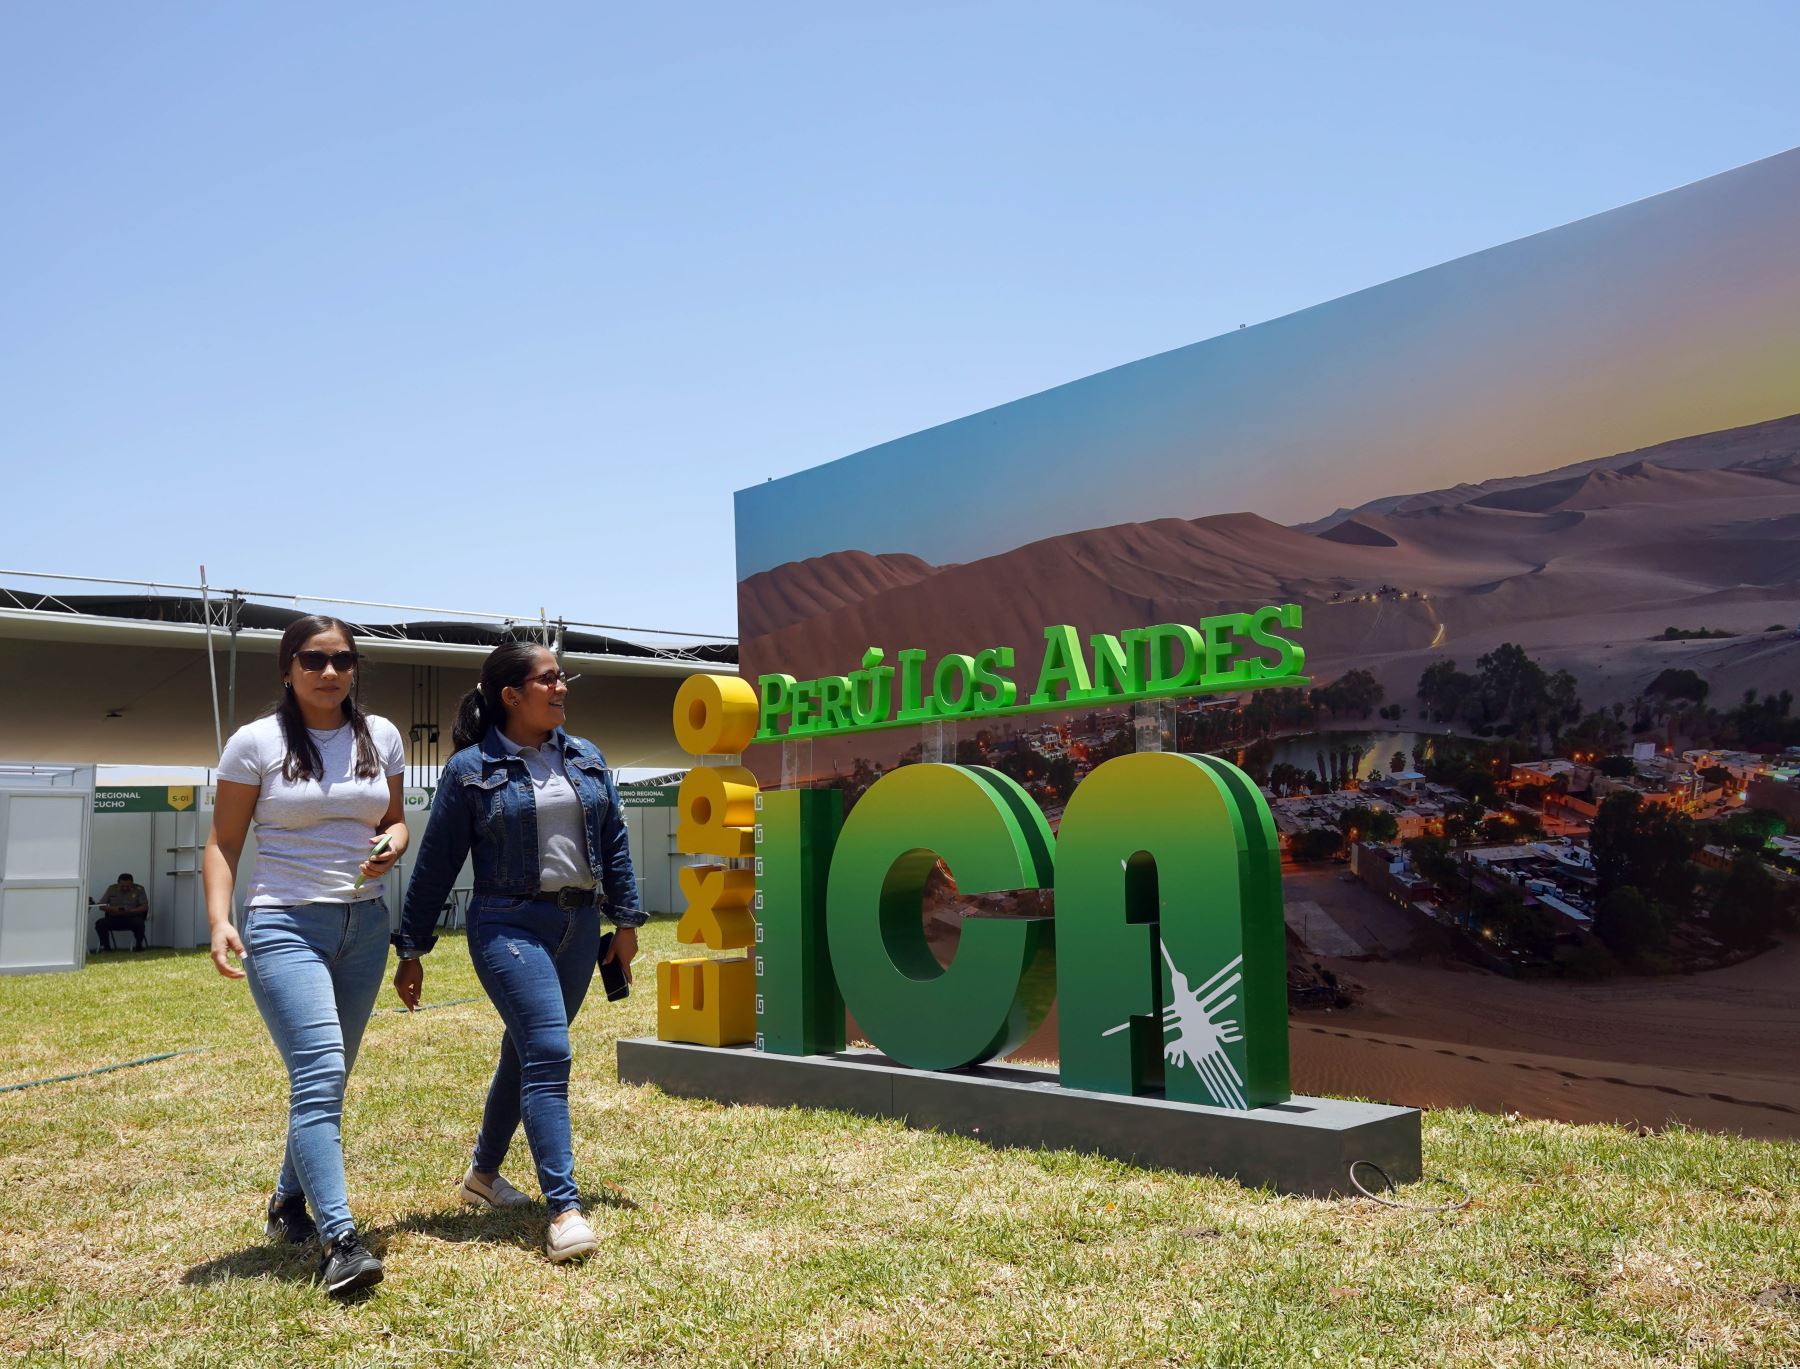 Ica última detalles de la organización de la Expo Perú Los Andes 2023 que se celebrará del jueves 9 al domingo 12 de noviembre. Foto: Genry Bautista